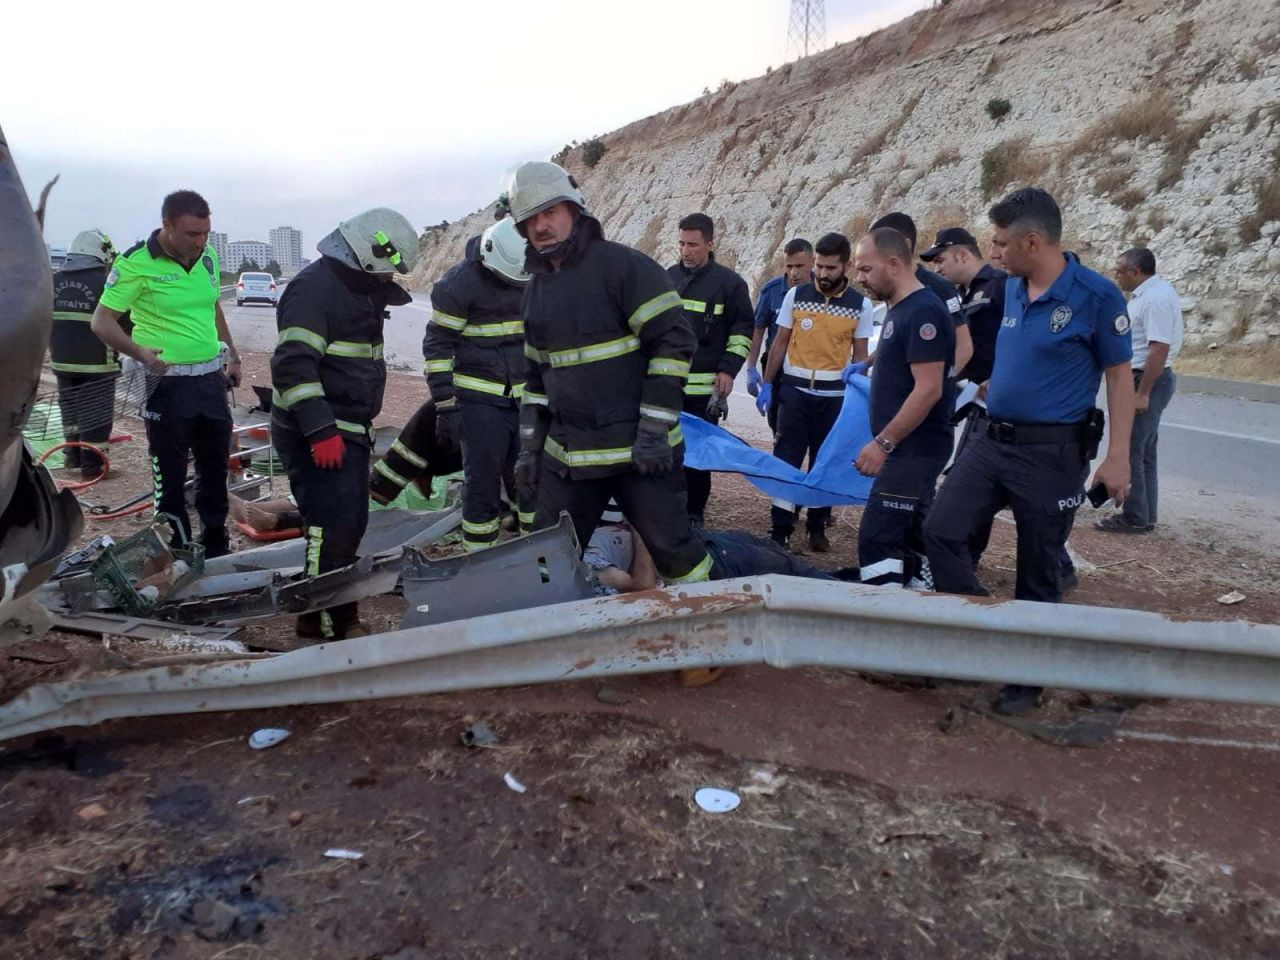 Gaziantep'te sebze yüklü TIR otobanı savaş alanına çevirdi 3 ölü